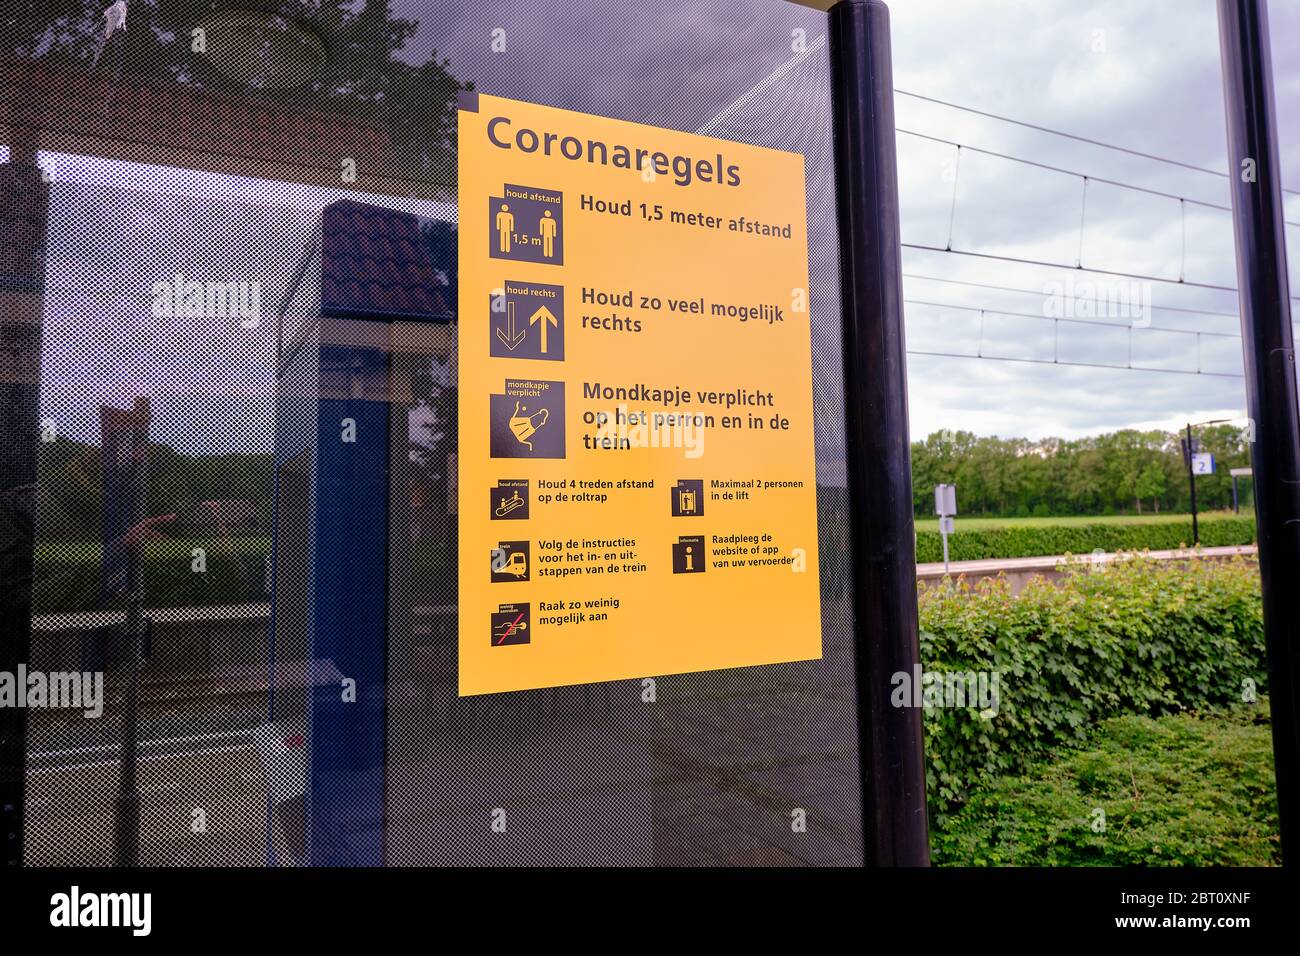 Borger, países Bajos, 20 de mayo de 2020:Corona normas de conducta escritas en una cartelera en una estación de ferrocarril en Holanda Foto de stock